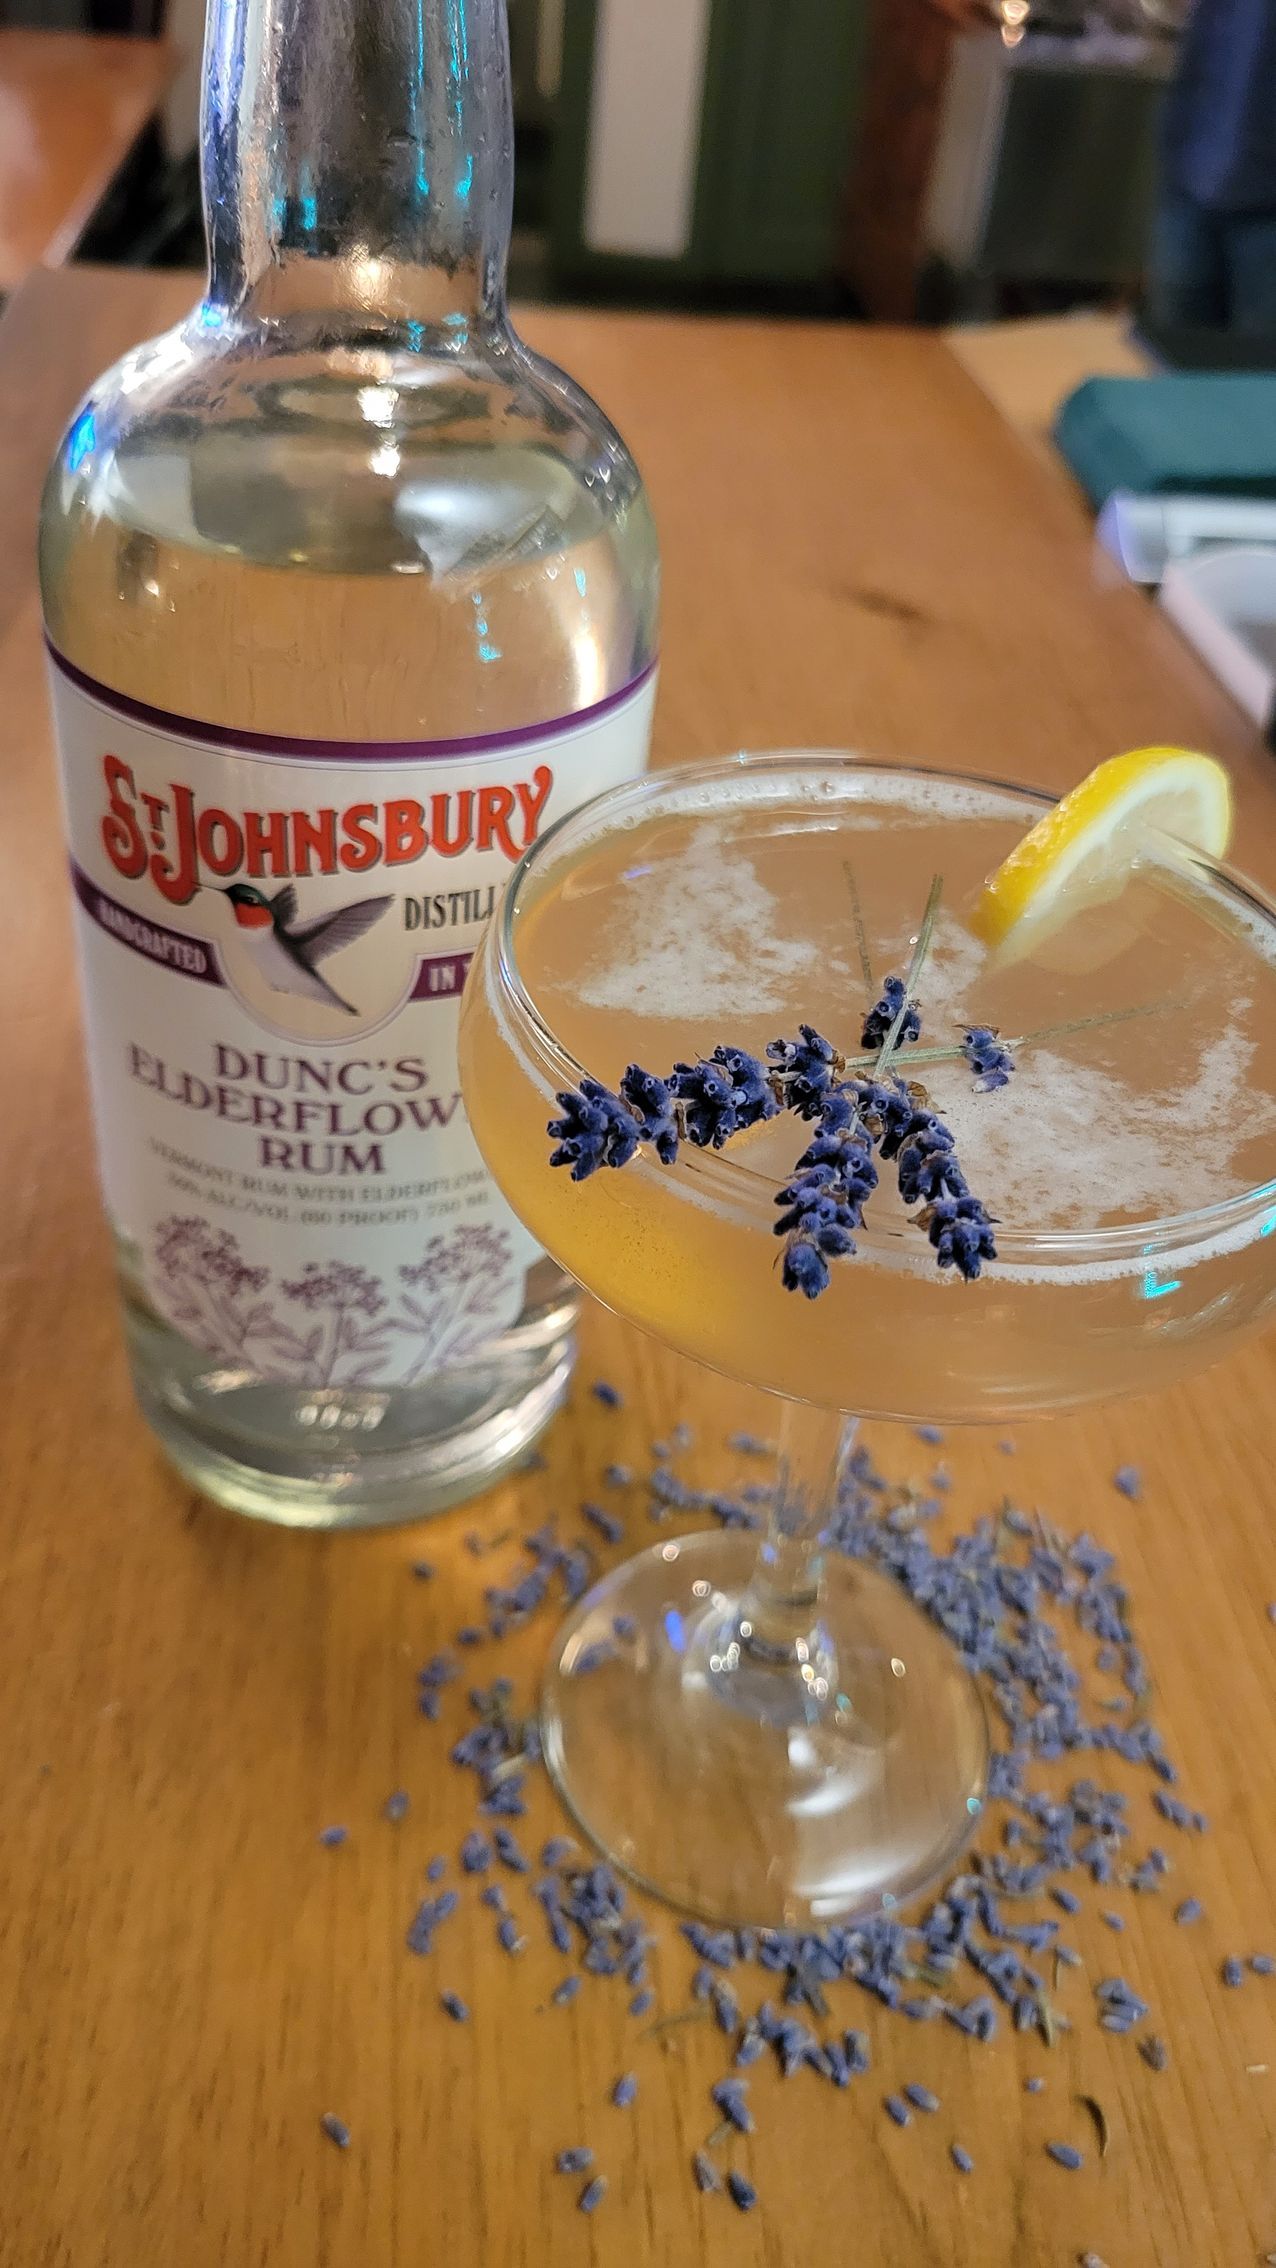 Lavender cocktail and bottle of Dunc's Elderflower Rum.